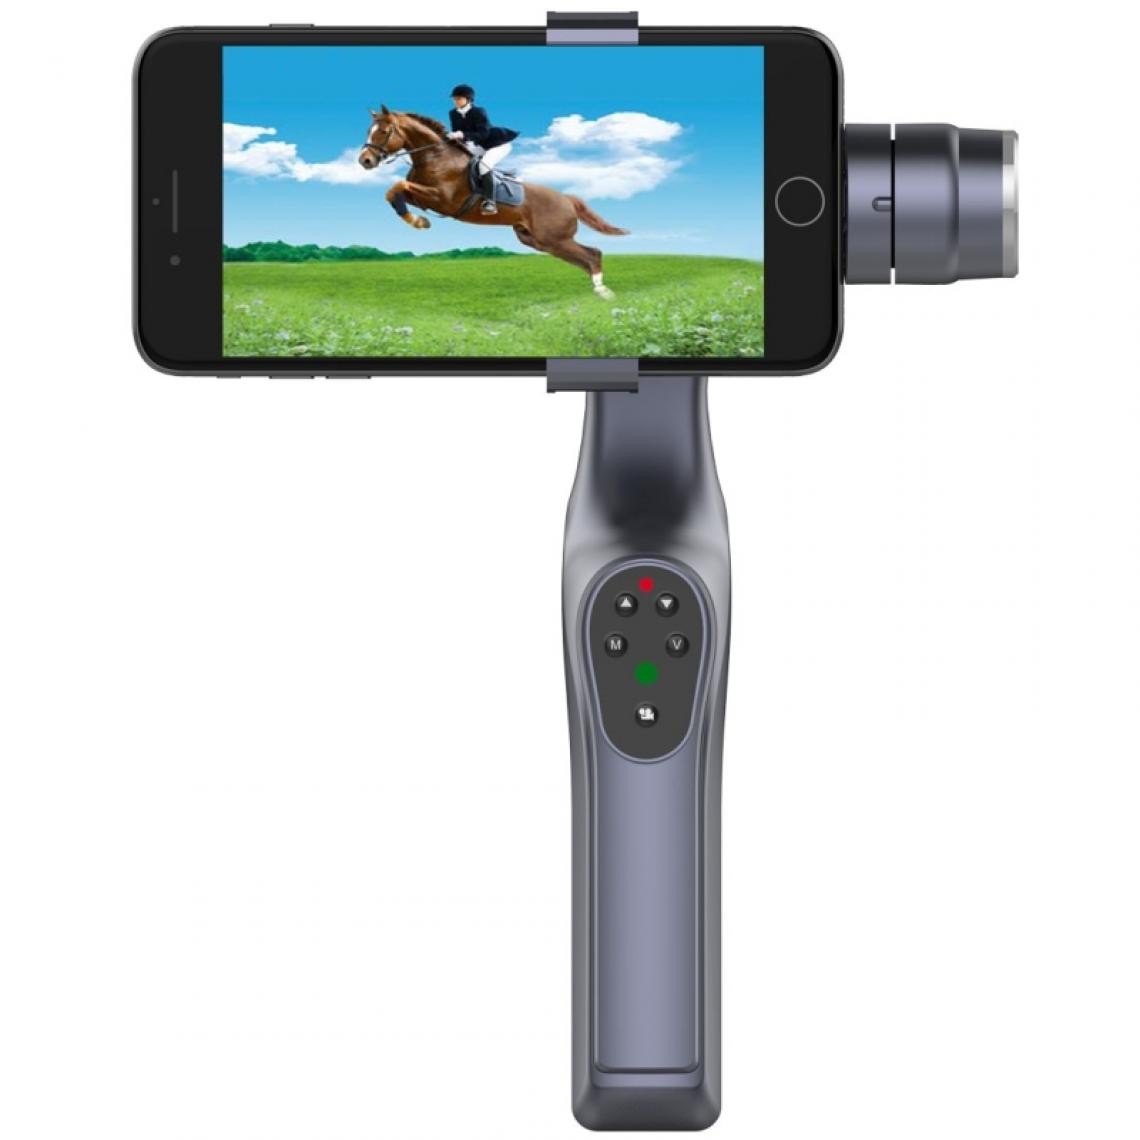 Wewoo - Monopode Selfie stick pour iPhone, Galaxy, Huawei, Xiaomi, LG, HTC et autres smartphone Vibration Reduction Bluetooth sans fil Monopod Stabilisateur Levier de retardateur avec système d'équilibre, - Autres accessoires smartphone